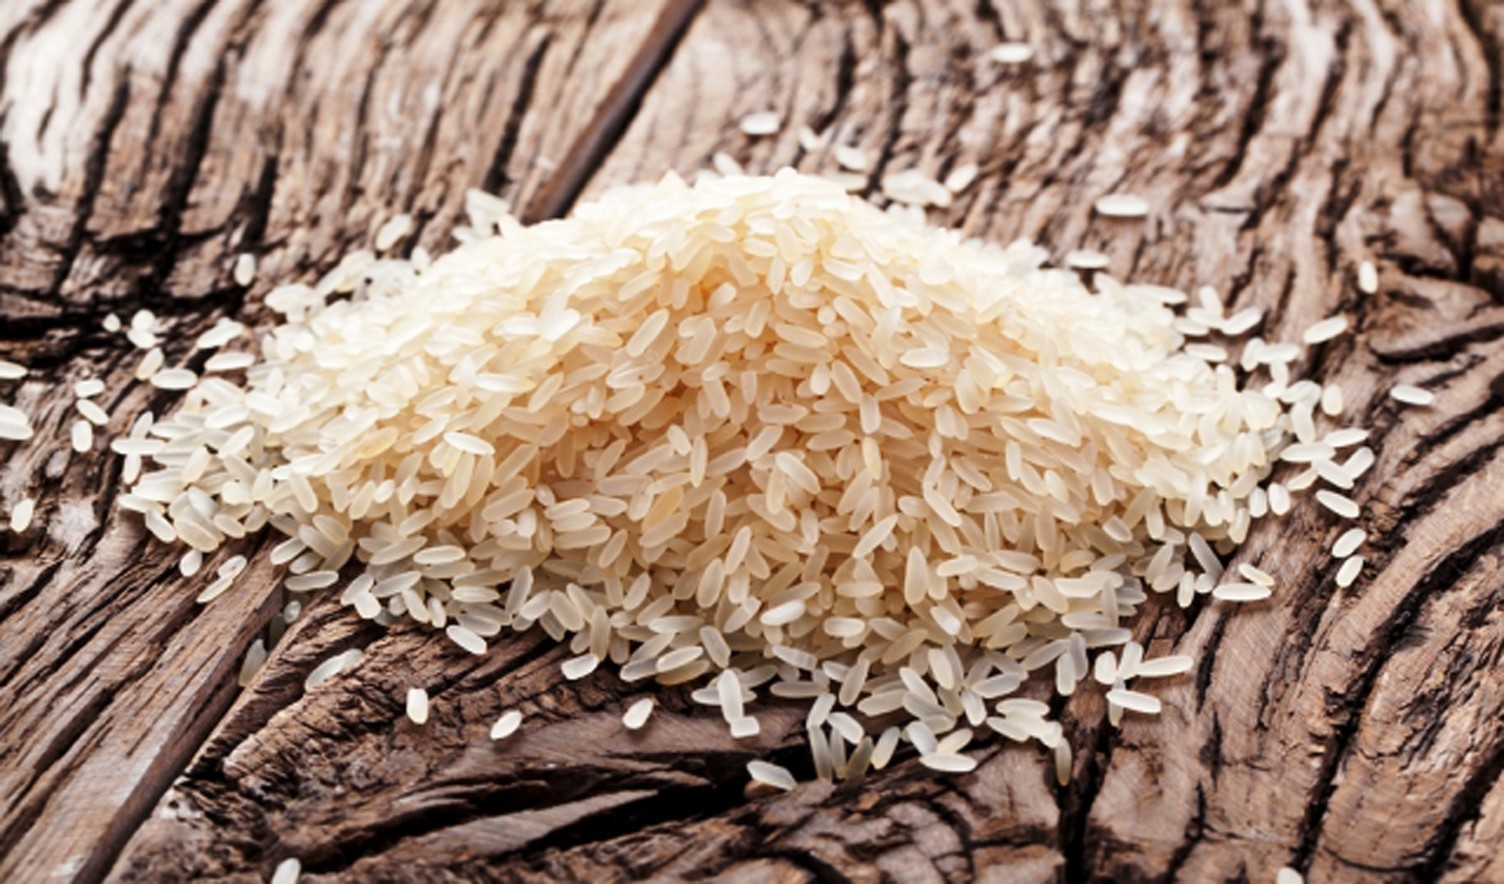 Сколько варить пропаренный рис в плове и для других блюд?